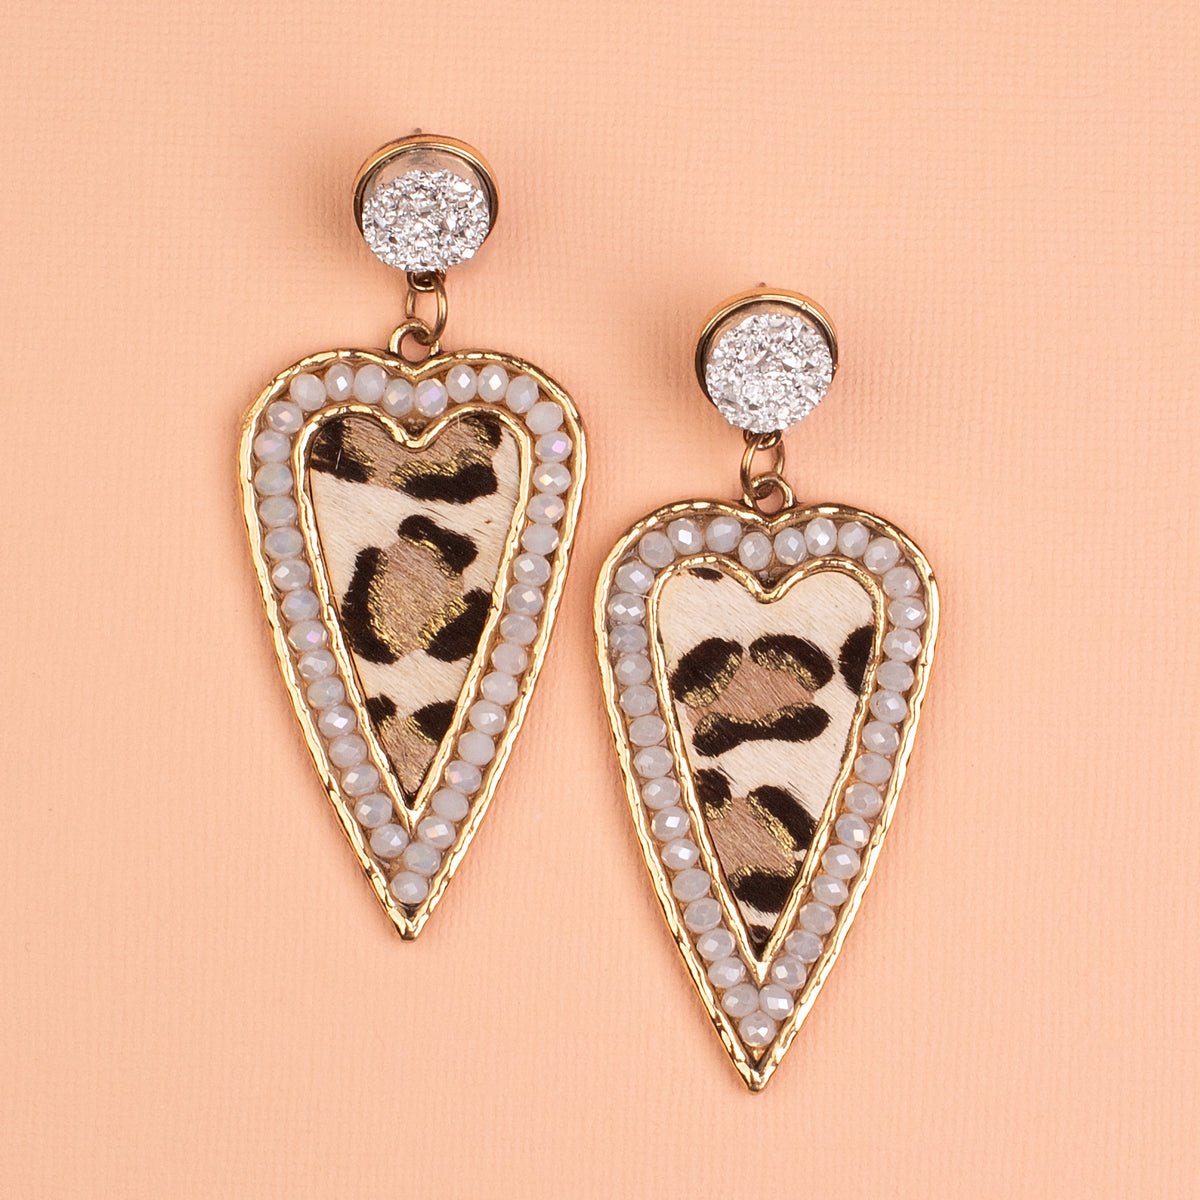 734034 - Leopard Heart Earrings - Ivory